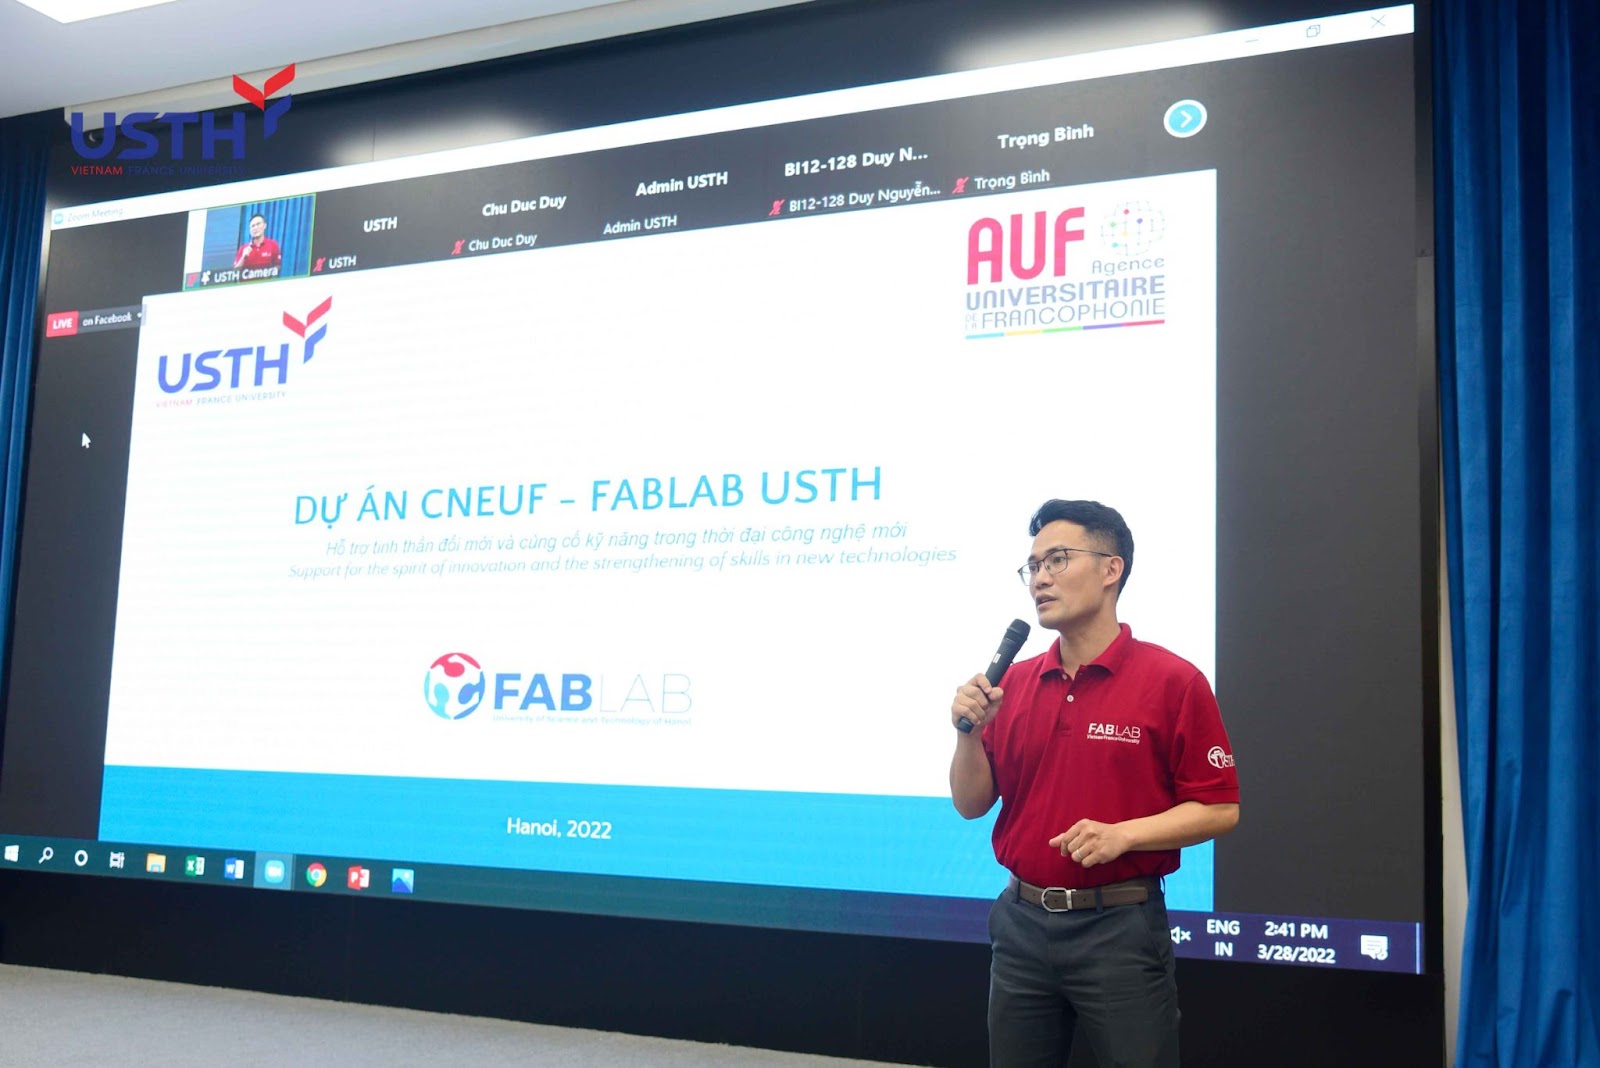 TS. Nguyễn Xuân Trường, chủ nhiệm dự án Fablab USTH, giới thiệu về dự án CNEUF - Fablab USTH